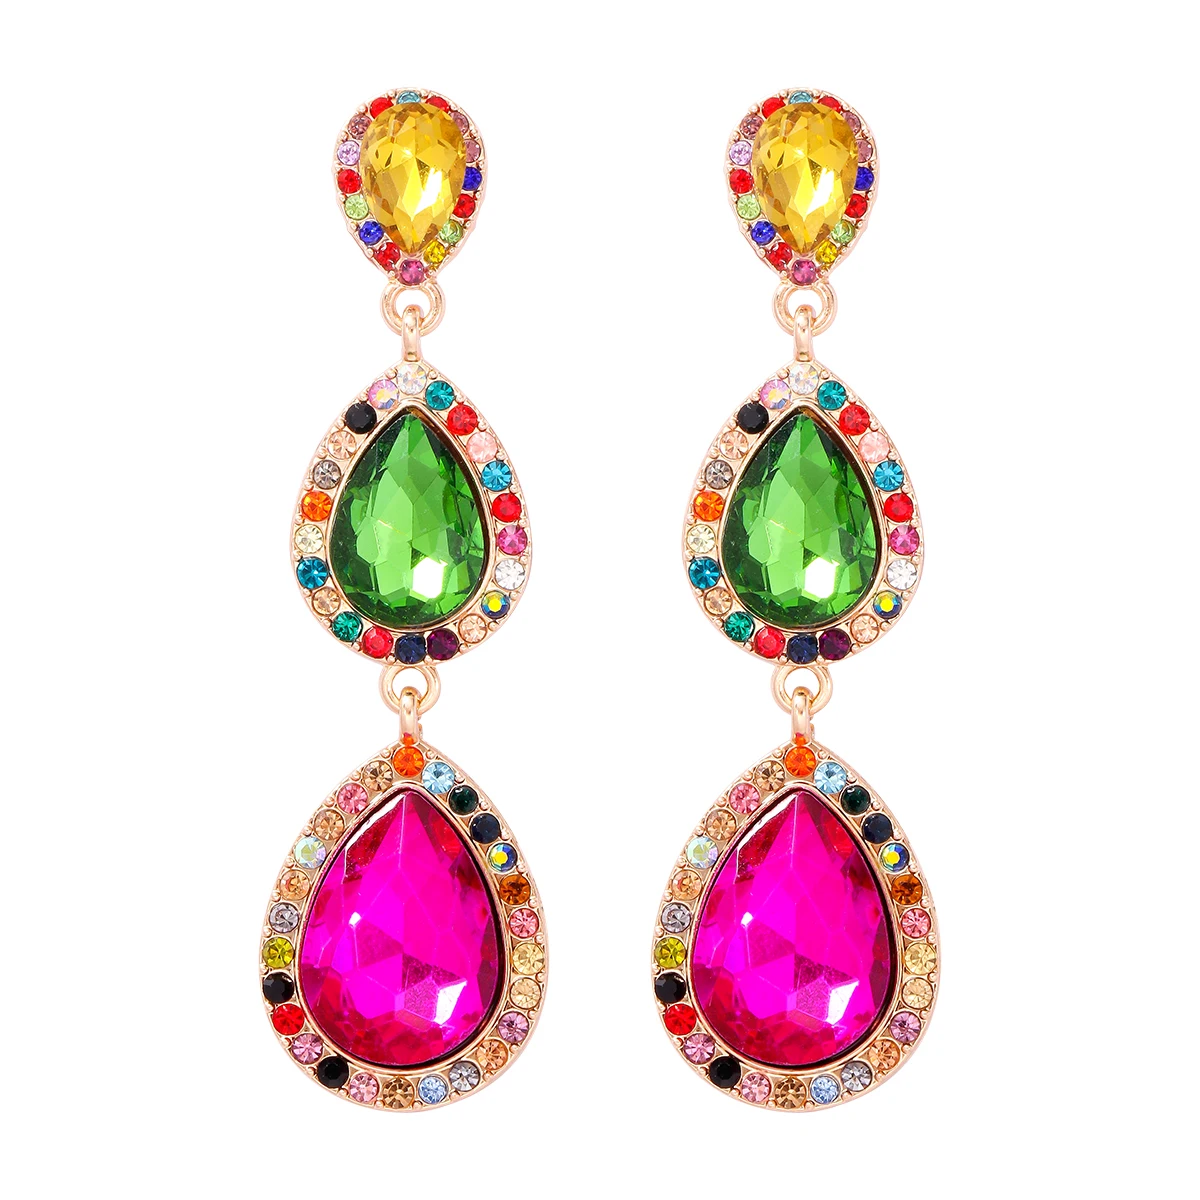 

JURAN Colorful Crystal Rhinestone Long Water Drop Earrings for Women Fashion Statement Party Jewelry Dangle Earrings Wholesale